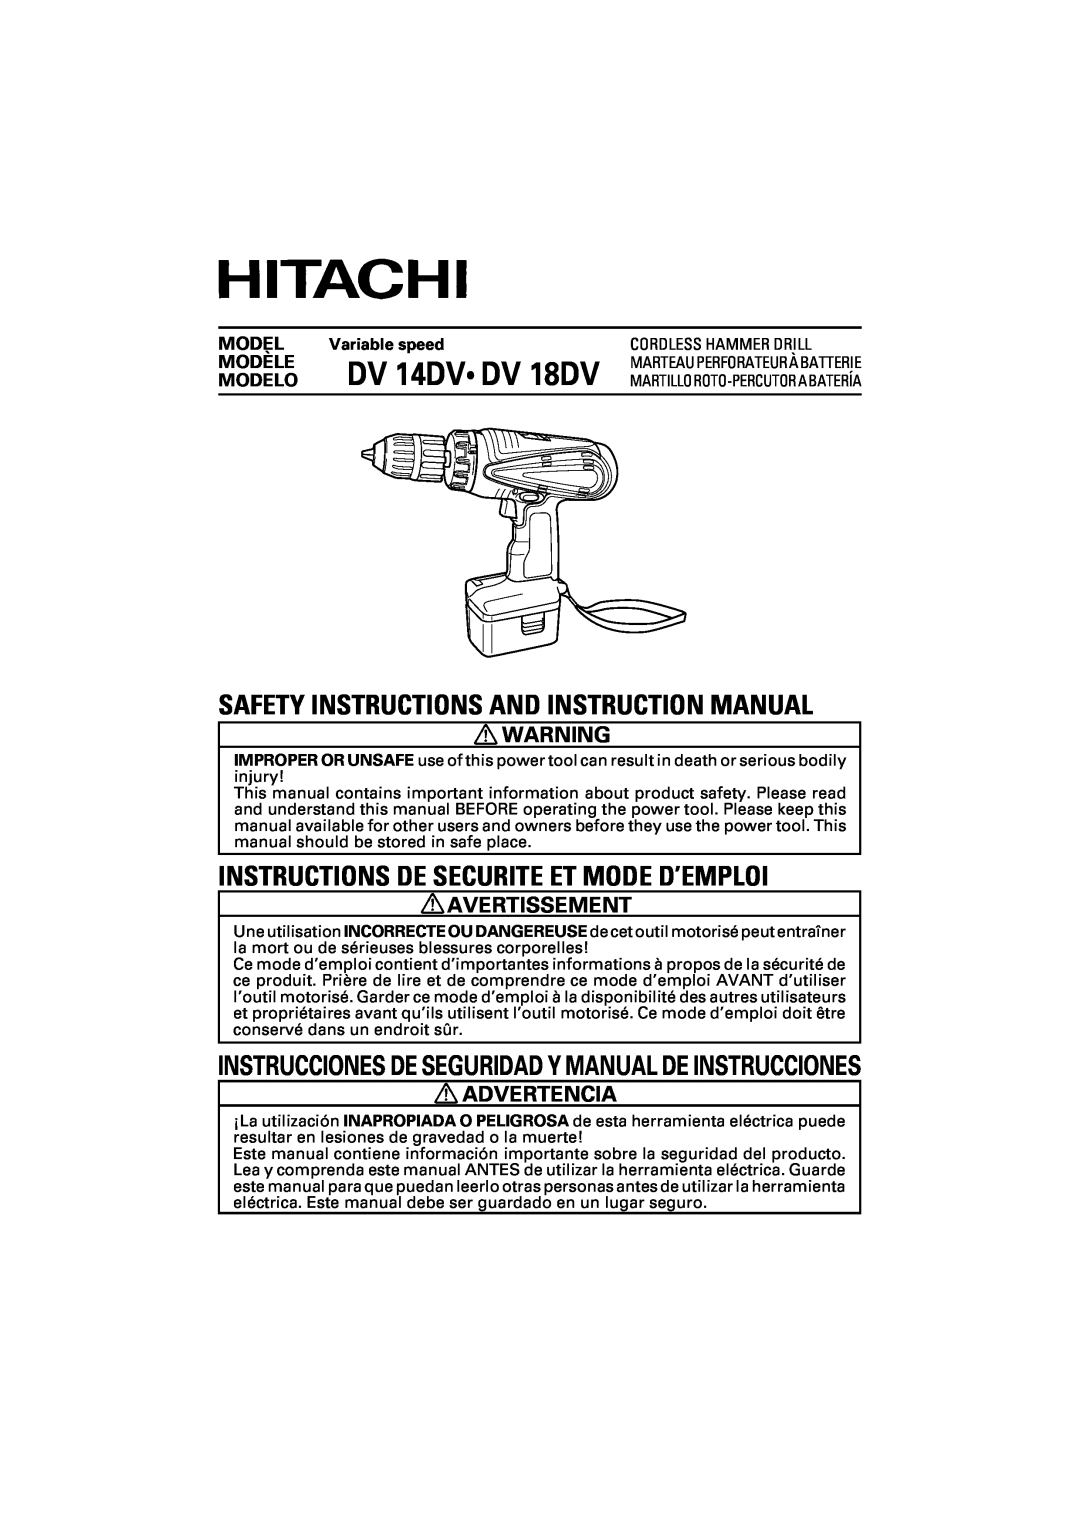 Hitachi DV 14DV instruction manual Avertissement, Advertencia, Instrucciones De Seguridad Y Manual De Instrucciones, Model 